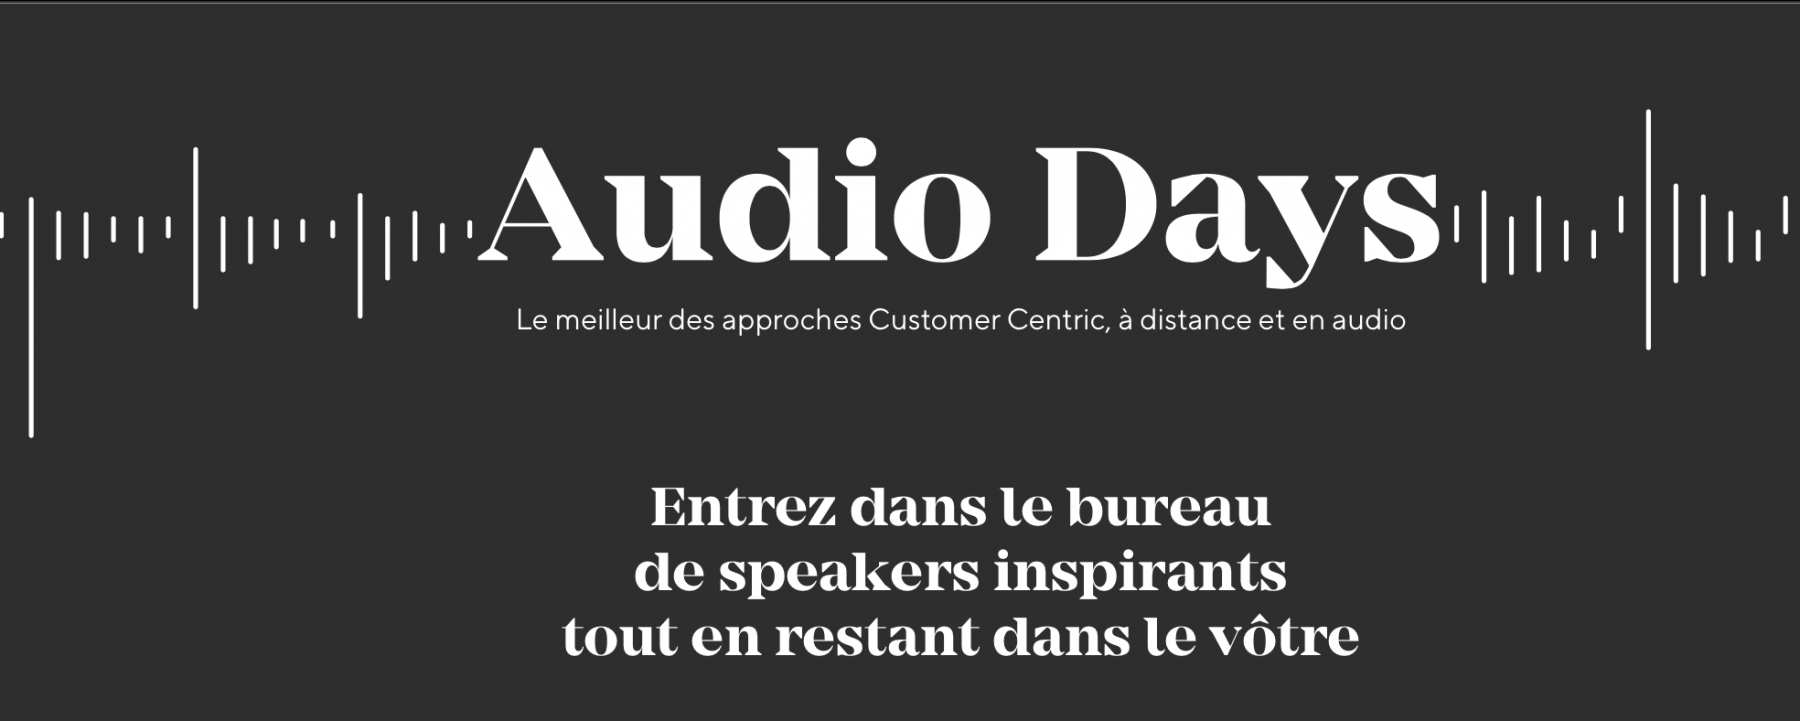 Audio Days, organisés par Intuiti du 9 au 11 décembre 2020